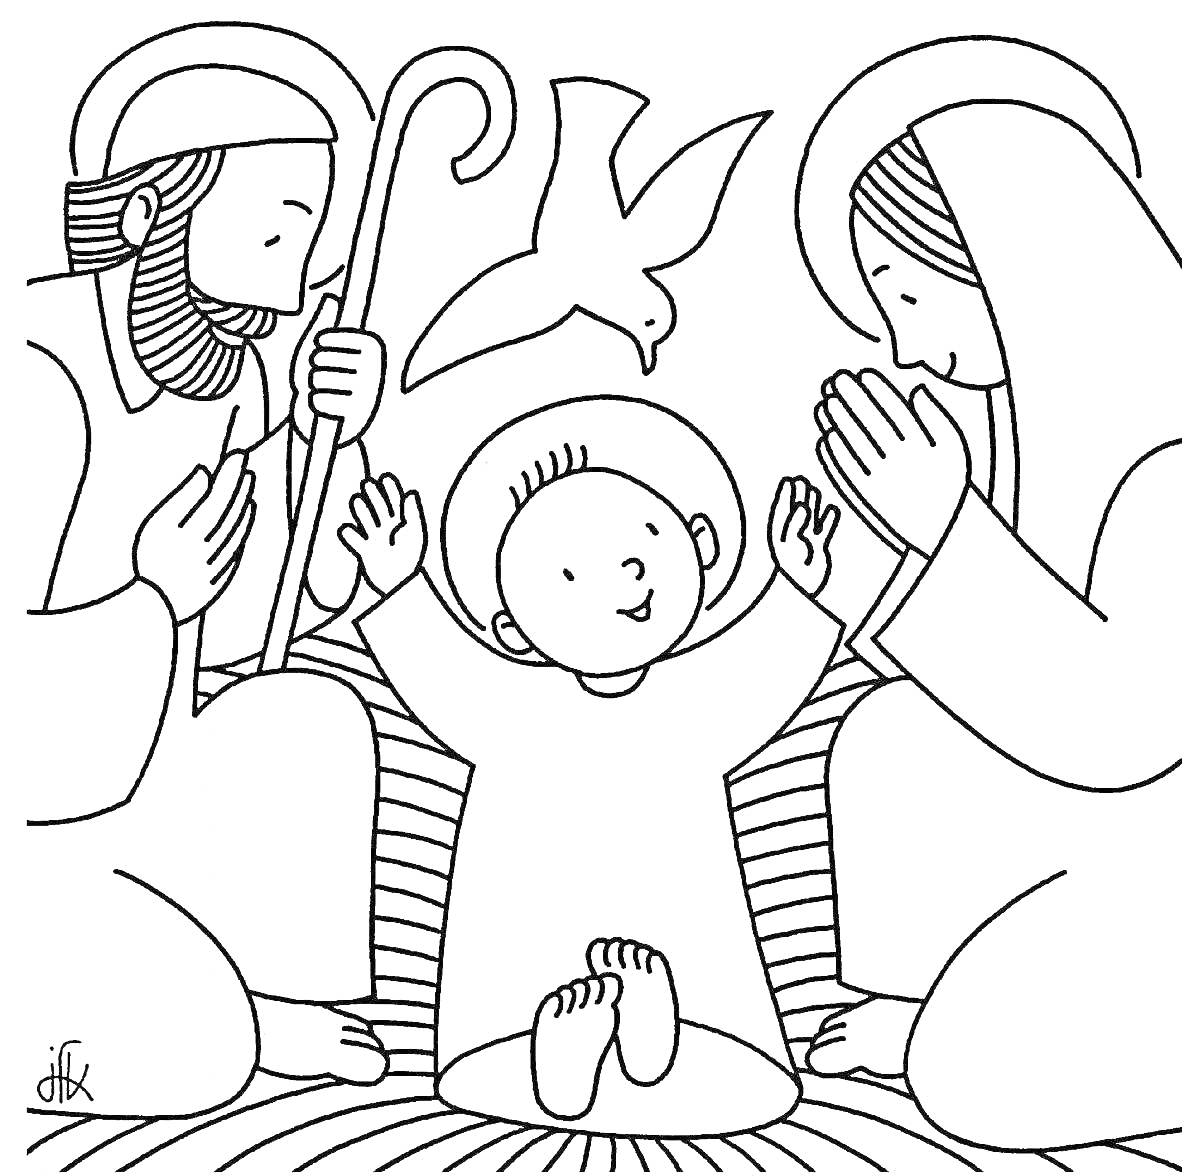 Раскраска Святое семейство с младенцем Иисусом, Марией и Иосифом с голубем